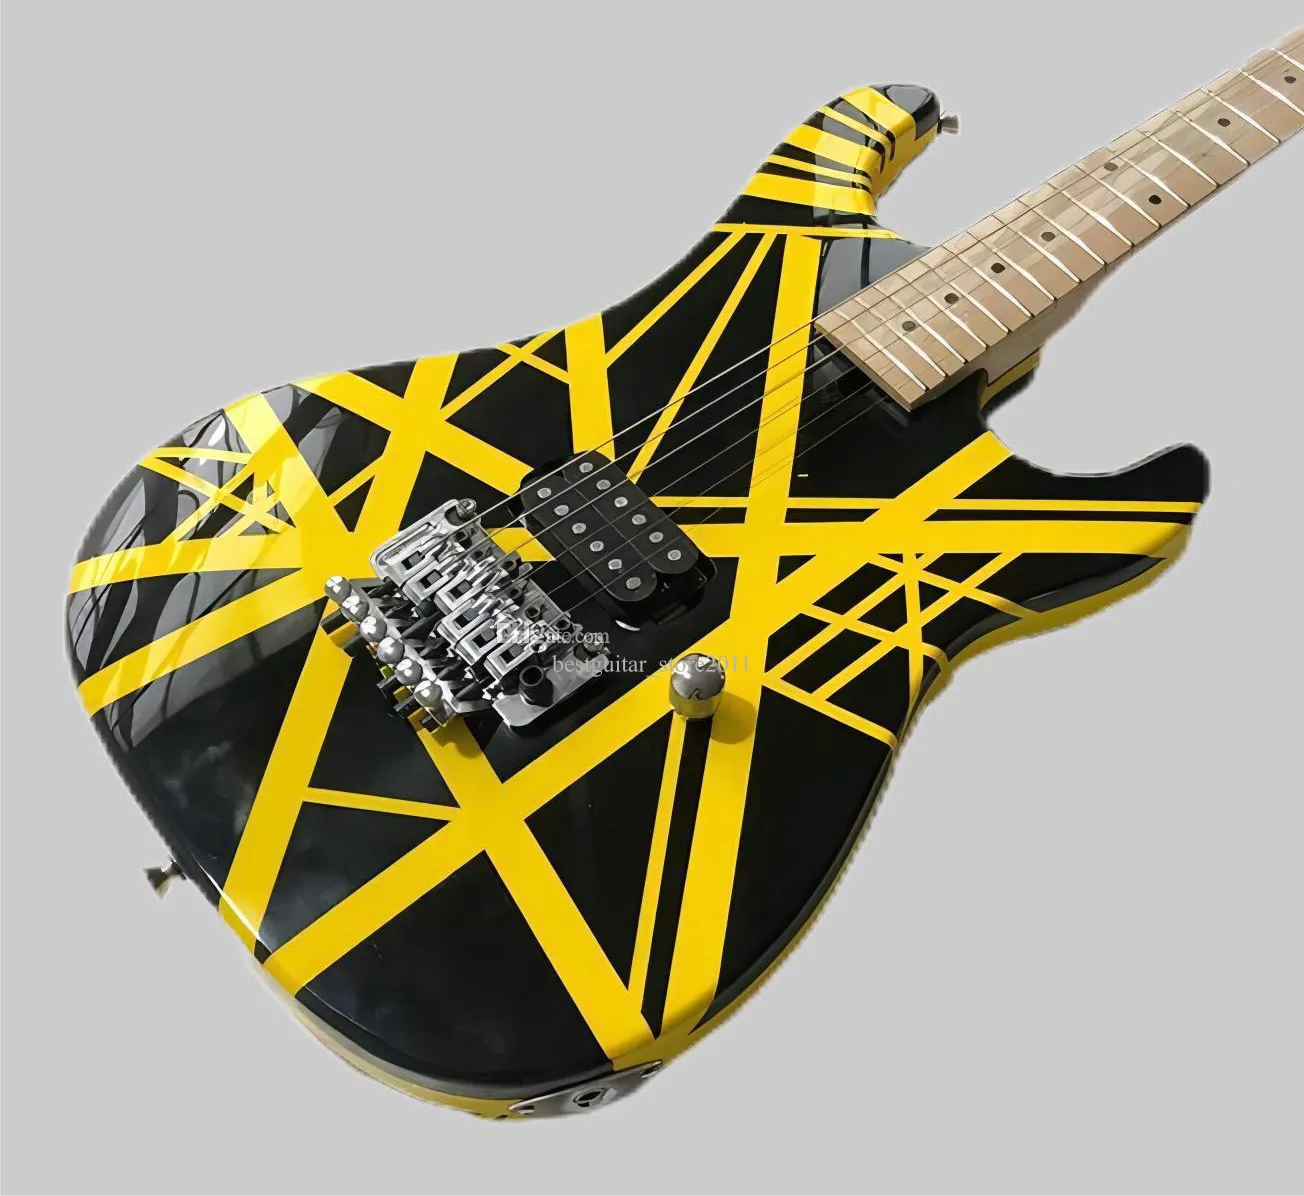 Eddie Edward Van Halen 5150 Guitare électrique noire à rayures jaunes, poupée banane, pont trémolo Floyd Rose, écrou de verrouillage, barre Whammy